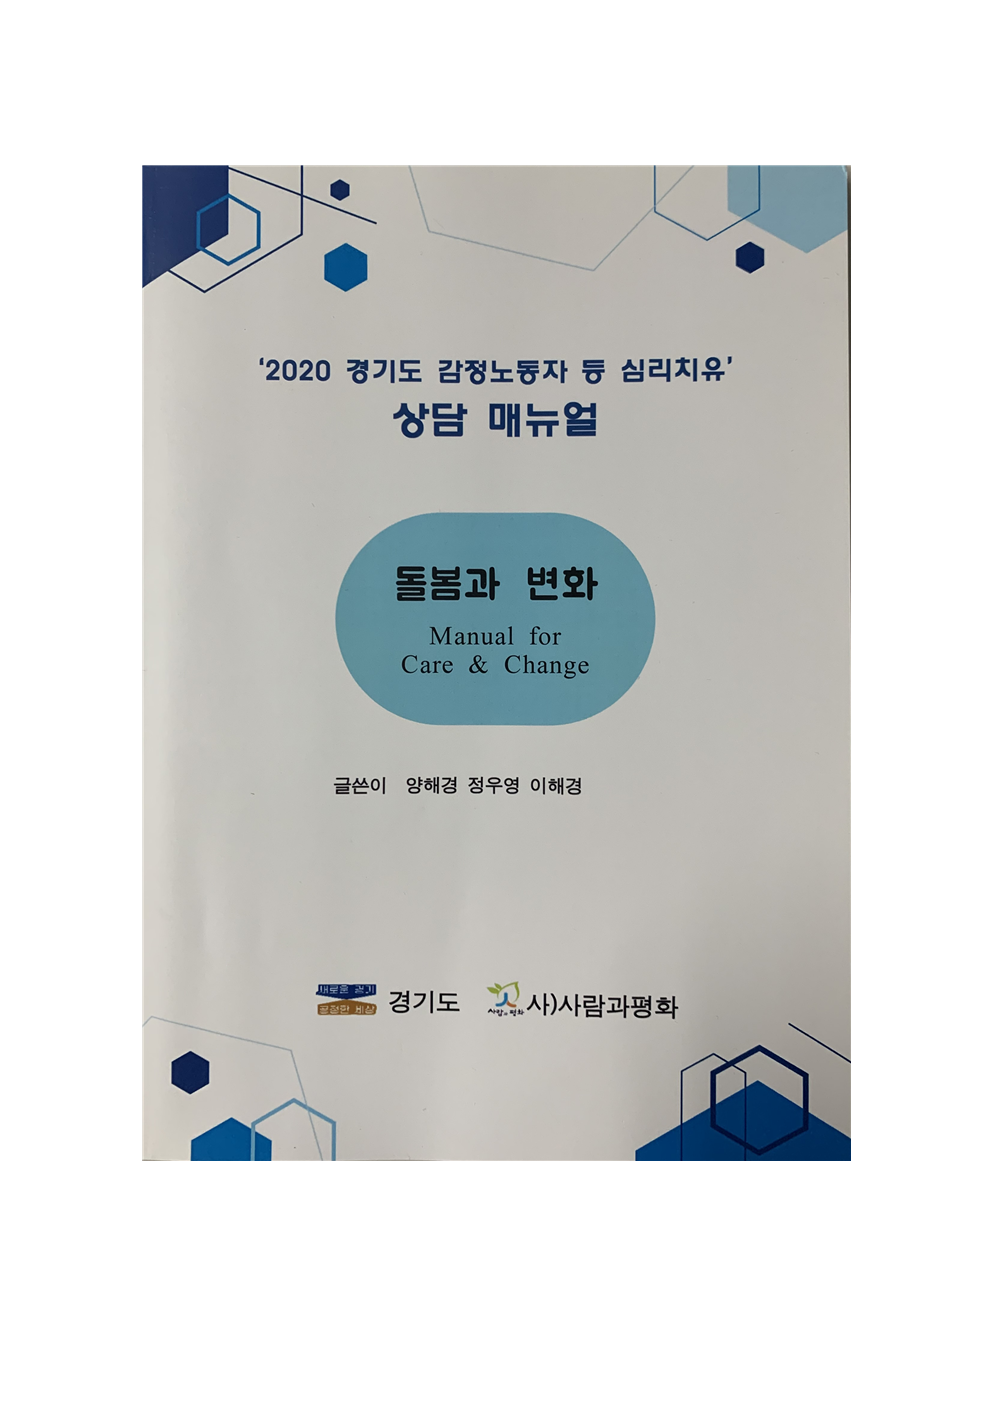 [사람과평화] '2020 경기도 감정노동자 등 심리치유' 상담 매뉴얼